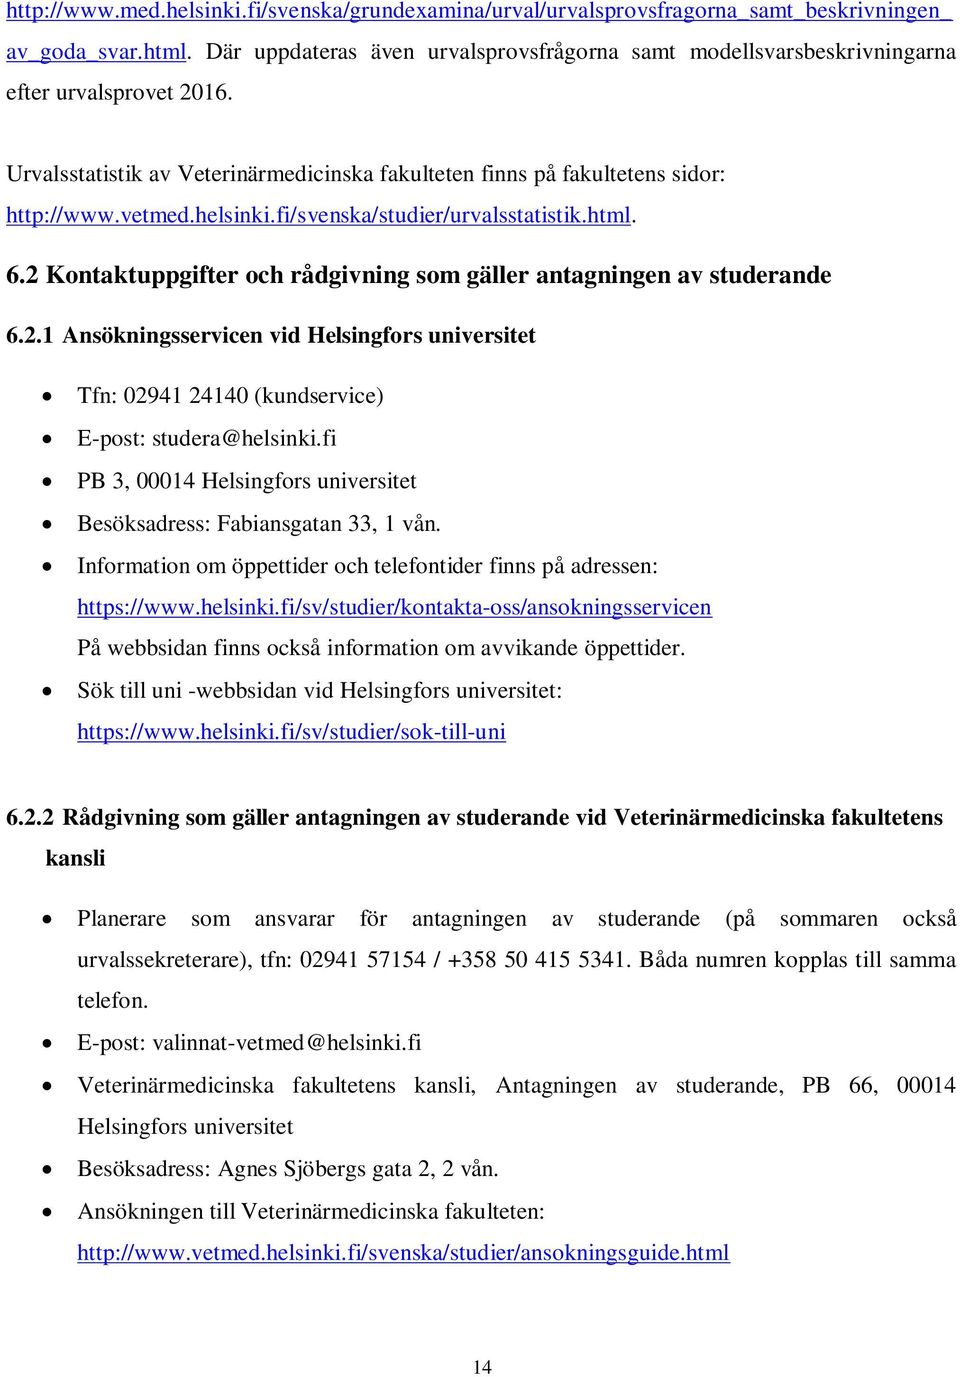 helsinki.fi/svenska/studier/urvalsstatistik.html. 6.2 Kontaktuppgifter och rådgivning som gäller antagningen av studerande 6.2.1 Ansökningsservicen vid Helsingfors universitet Tfn: 02941 24140 (kundservice) E-post: studera@helsinki.